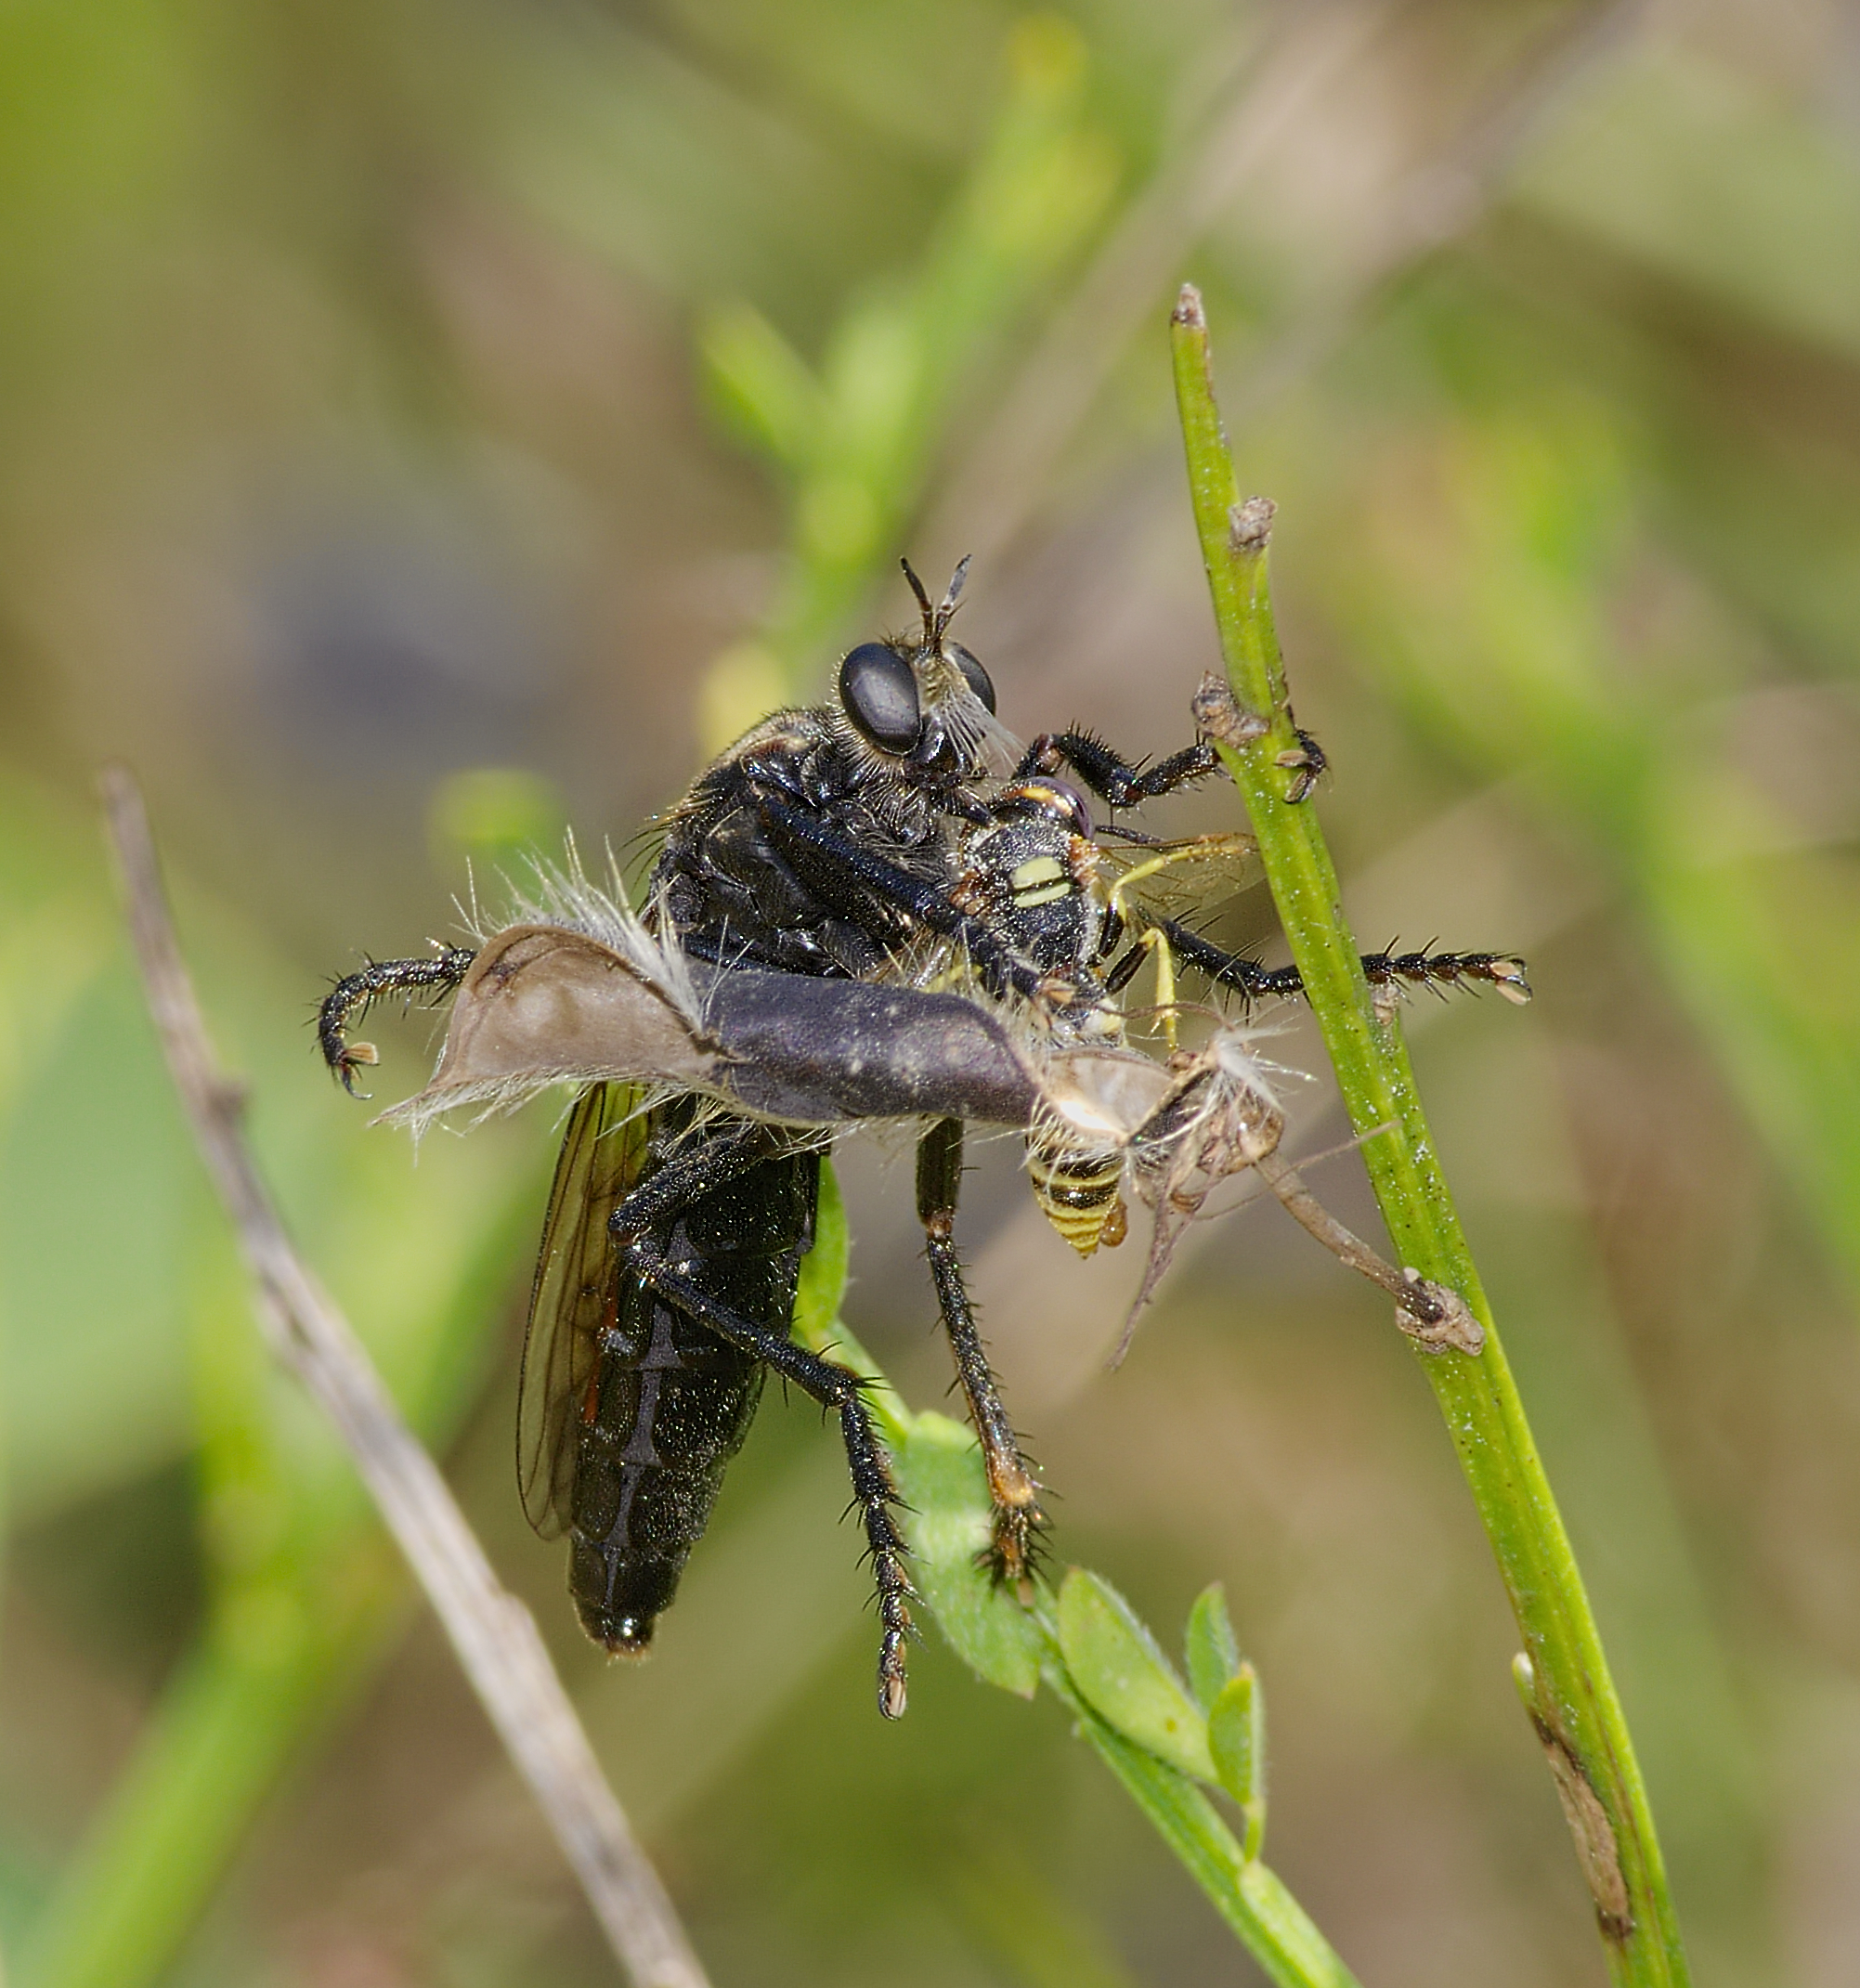 A Robber fly (Dasypogon diadema) by Andreas Eichler